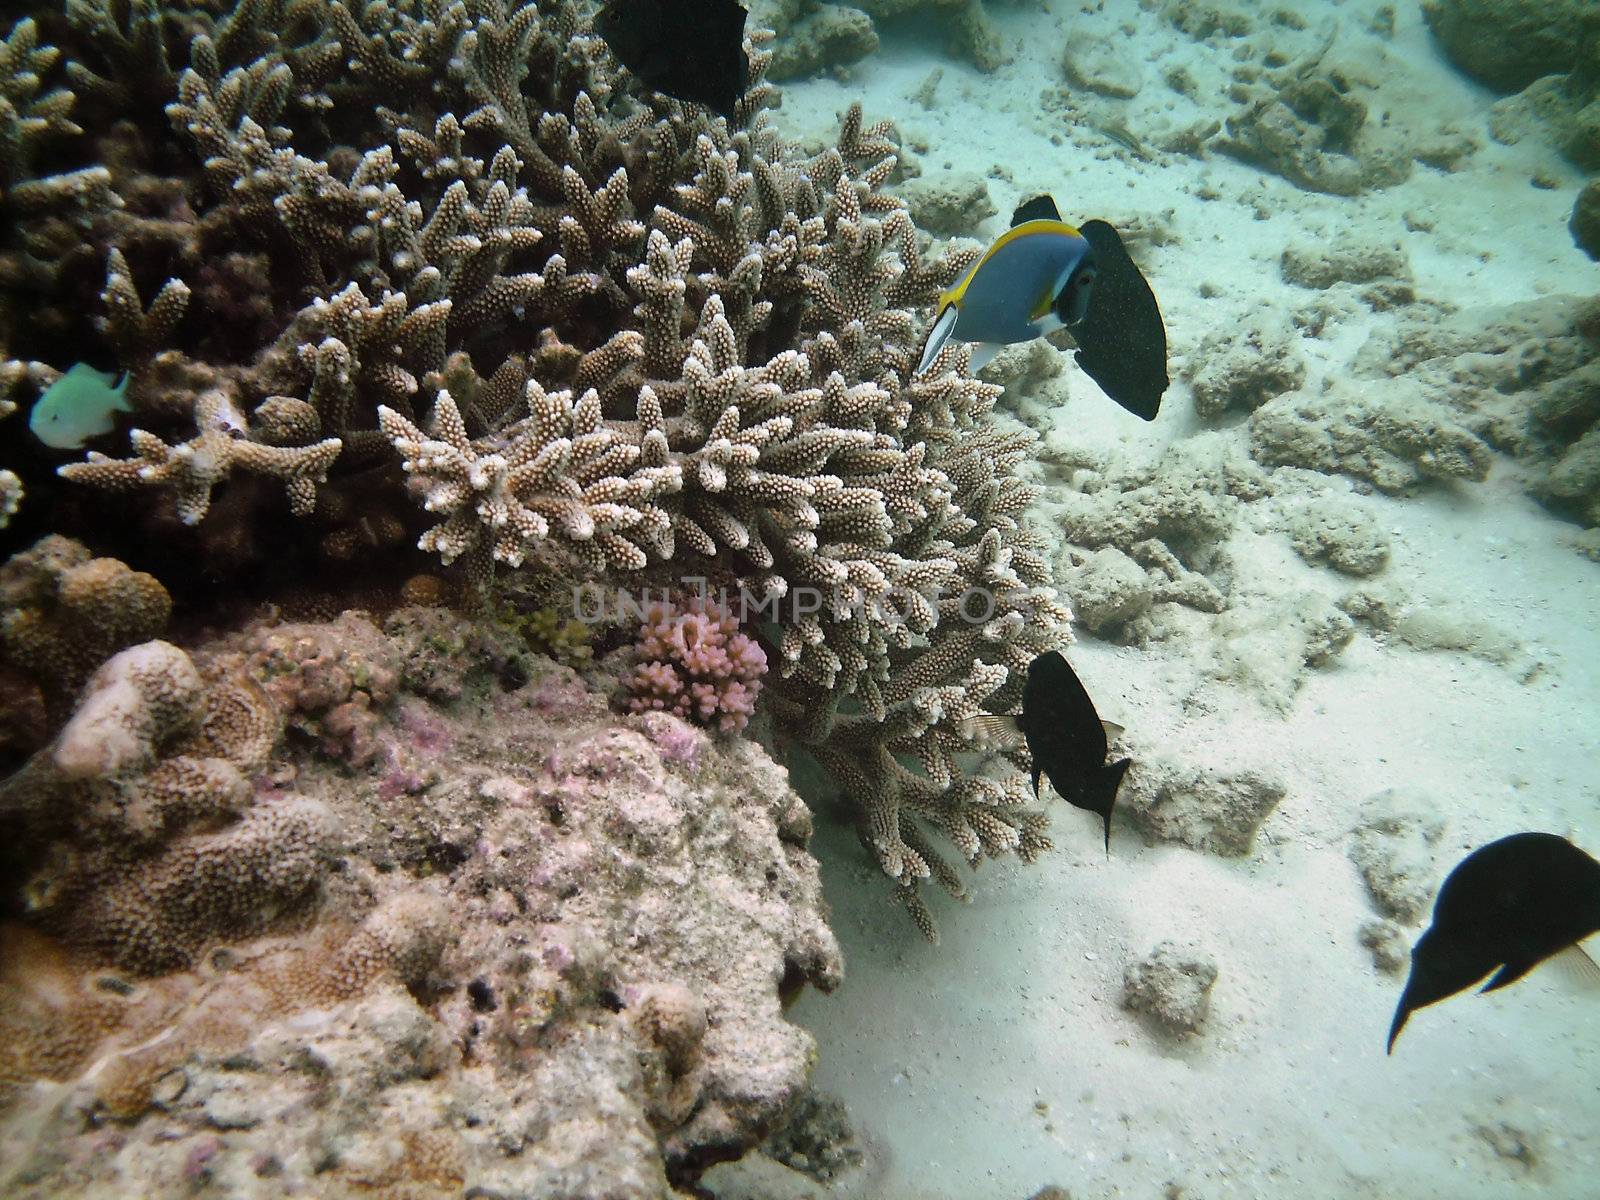 Tropical fish kingdom - coral reef in the maldivian sea